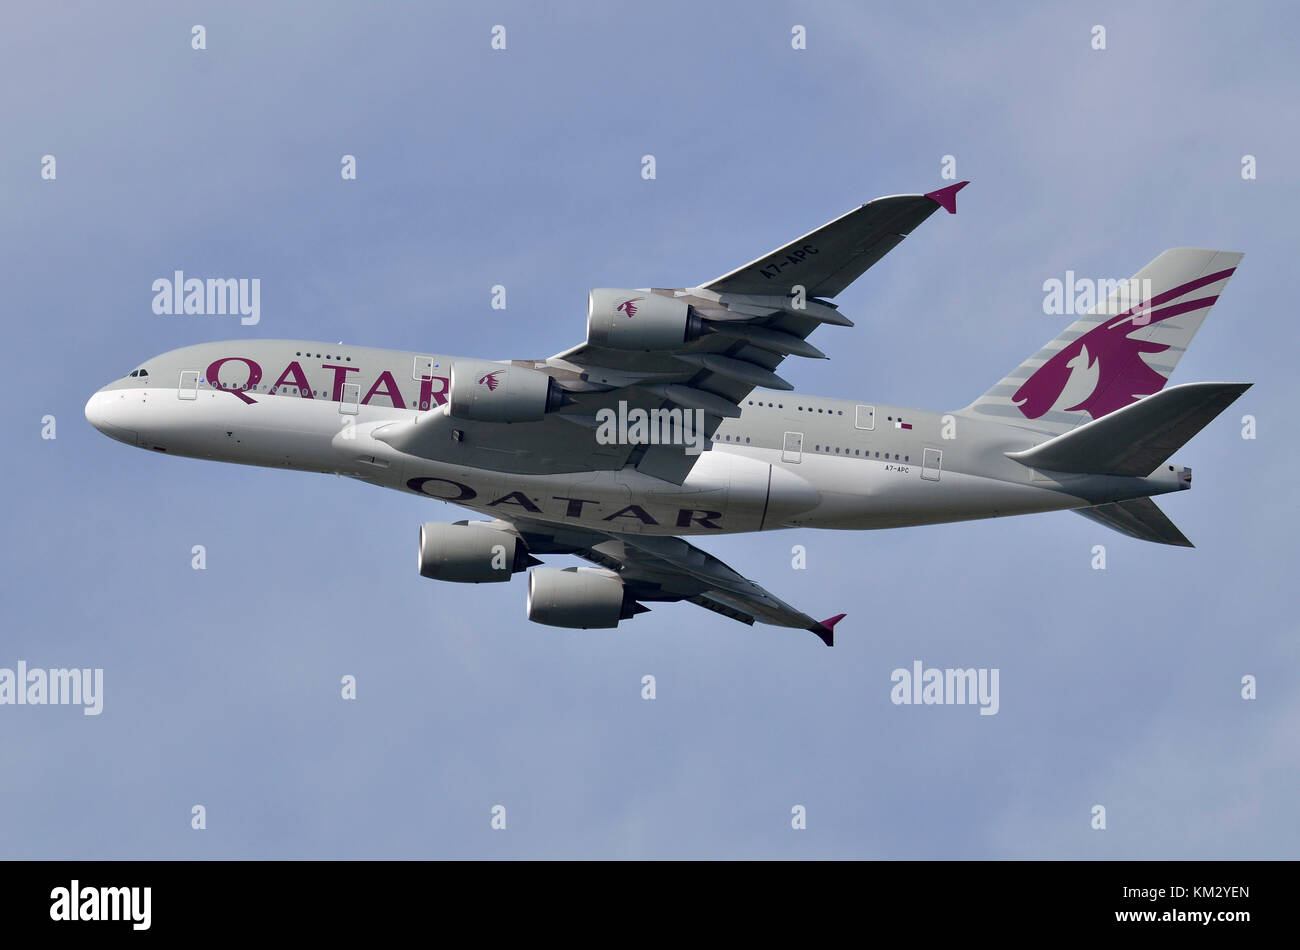 Qatar Airways Airbus A380, London Heathrow Flughafen, Großbritannien. Airbus A 380-861 A7-APC wird gesehen, Klettern nach dem Take-off. Stockfoto